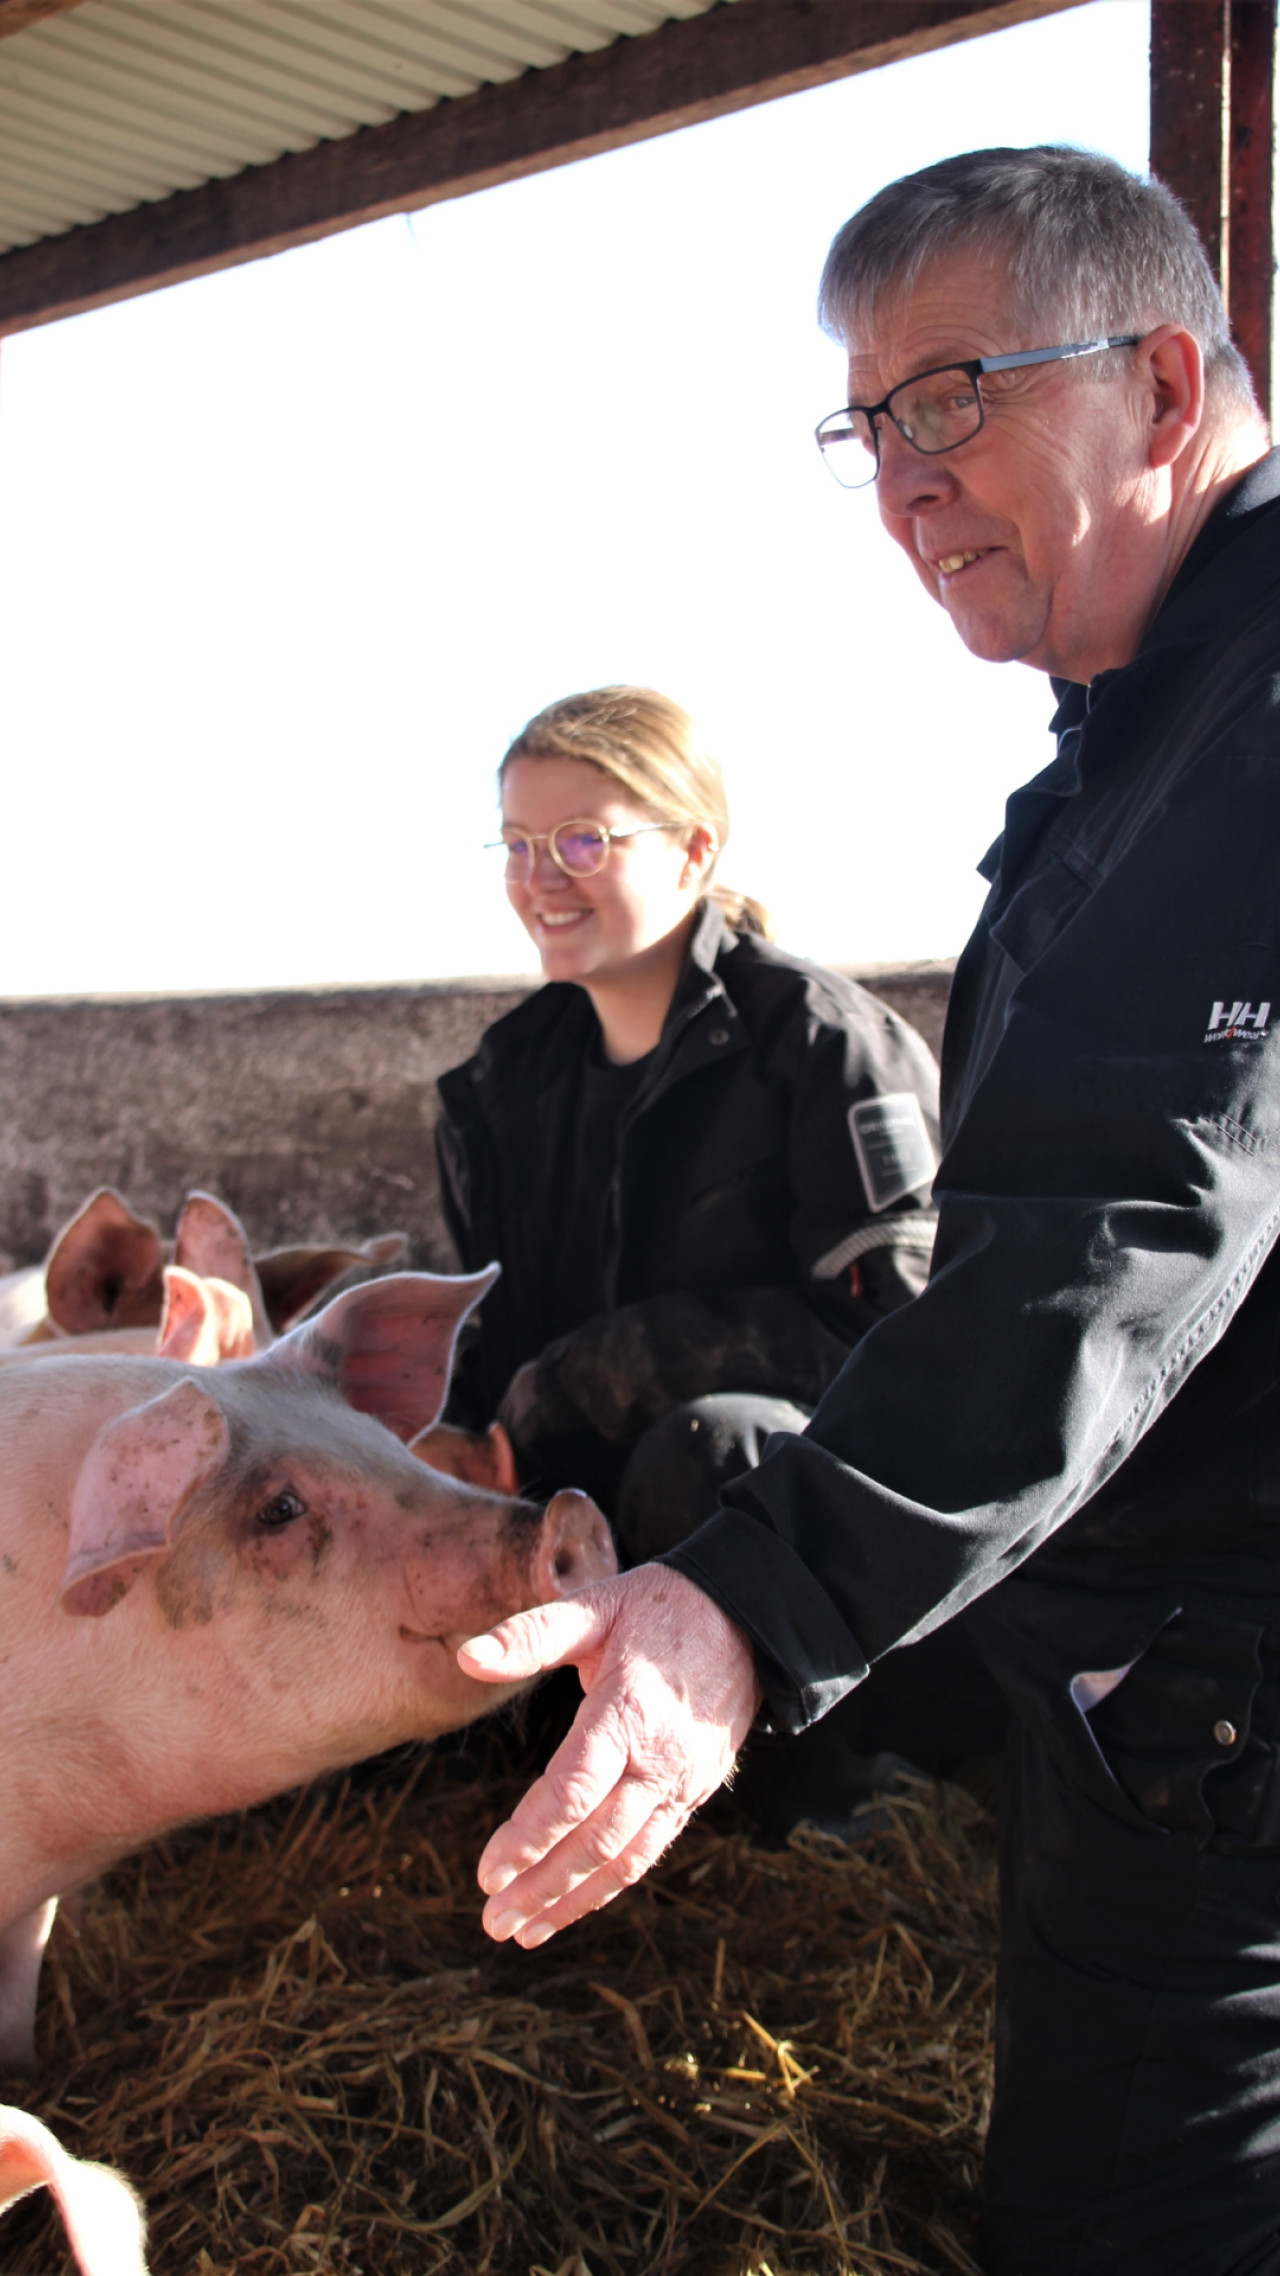 Søren Peter Hansen har arbejdet med grise i mere end 30 år, og har lært at afkode deres adfærd i stalden